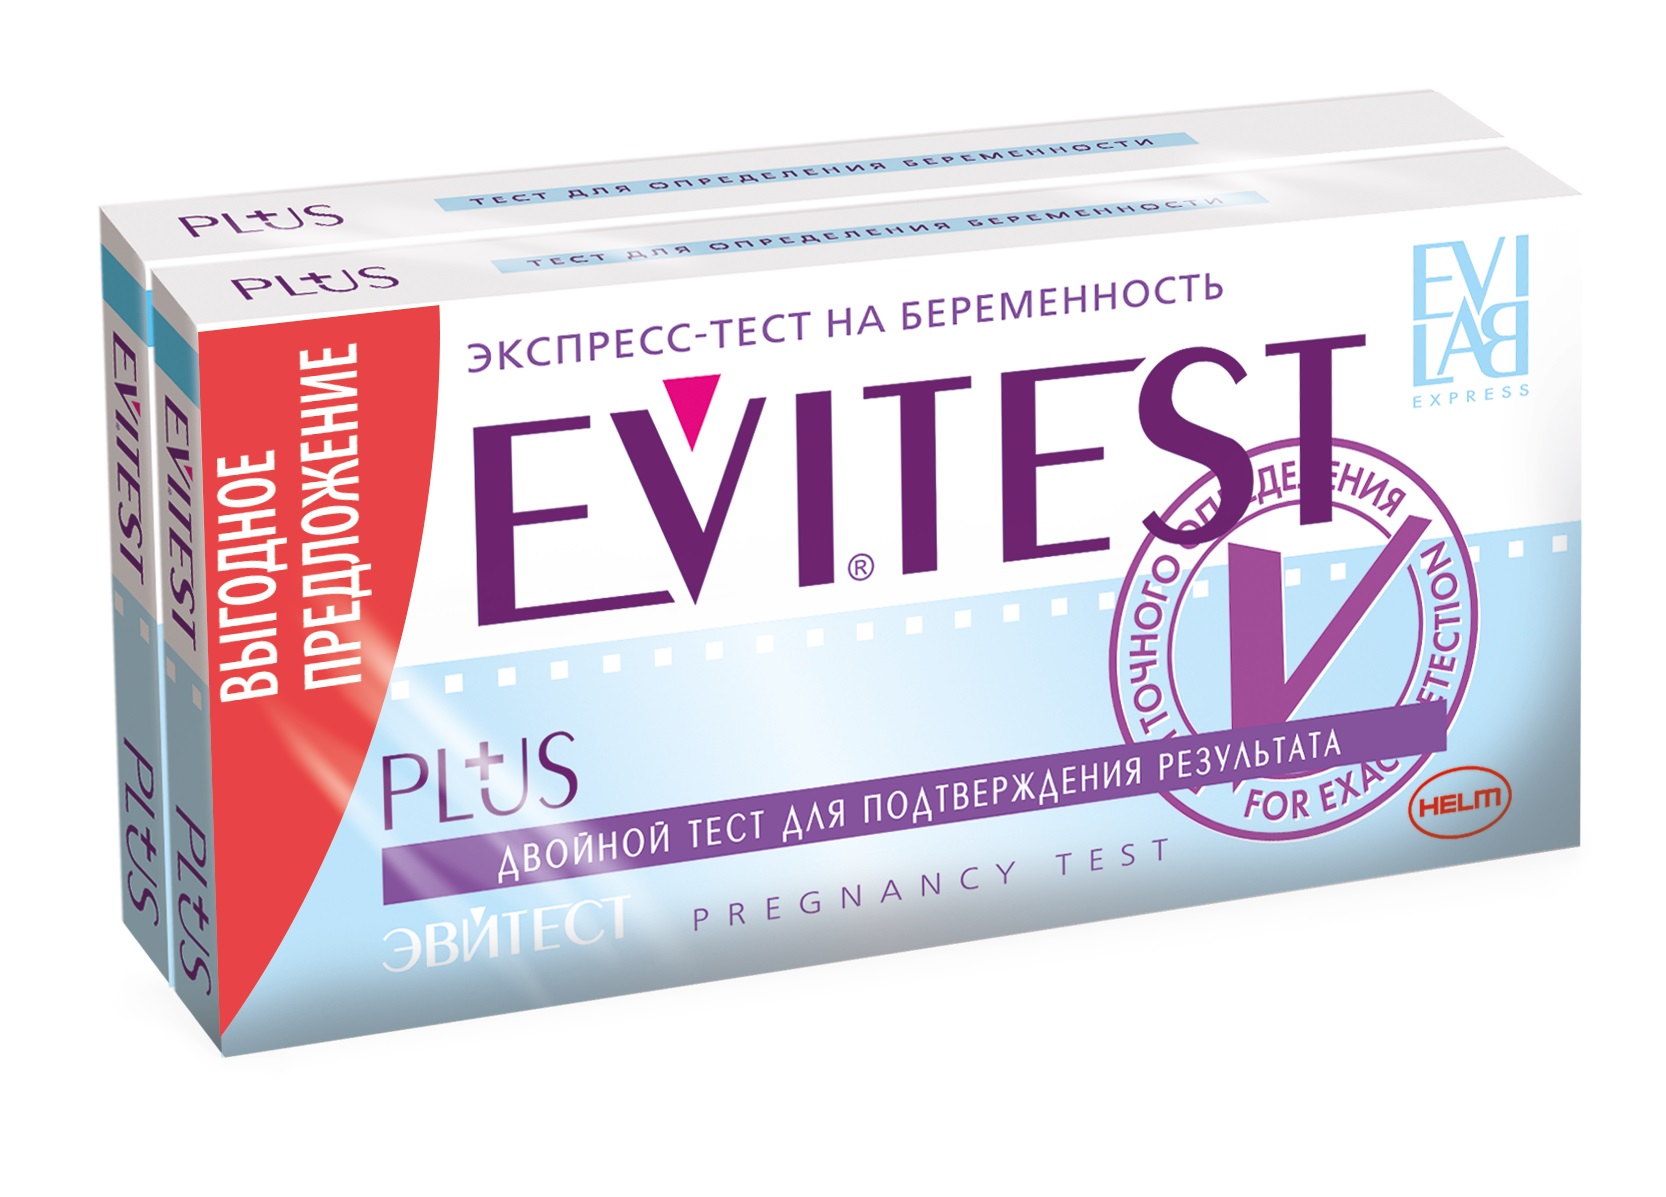 Эвитест тест для определения беременности №2 набор из 2-х продуктов со скидкой - 50% на вторую упаковку